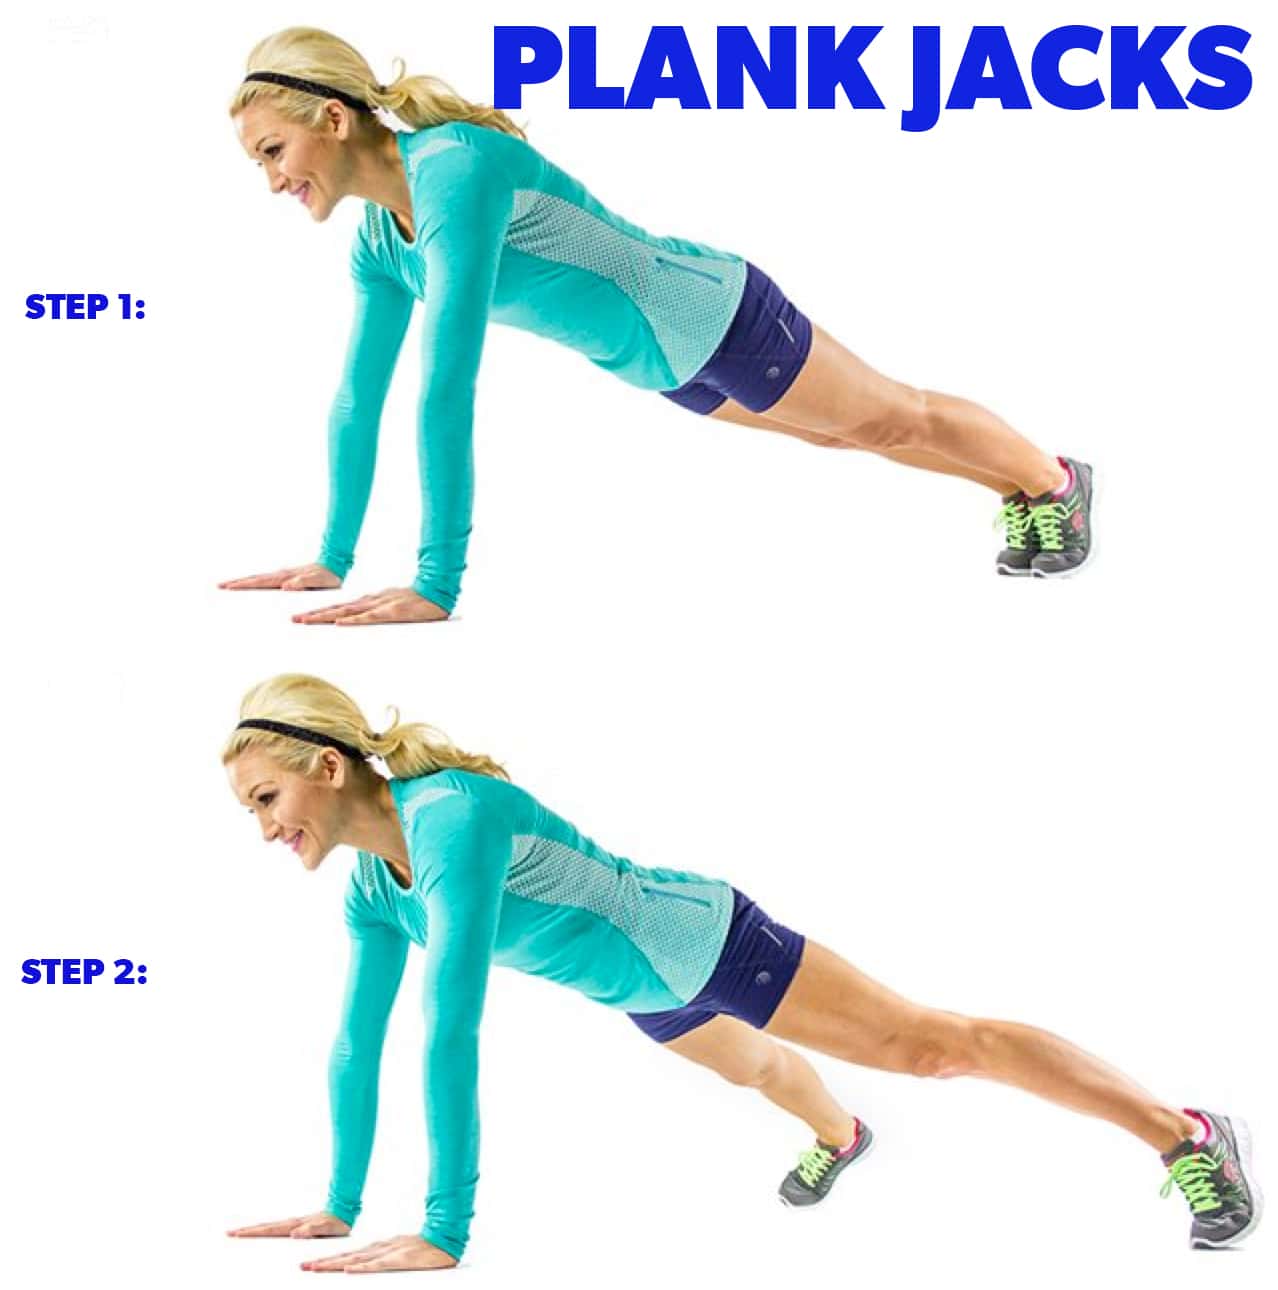 Plank-jacks